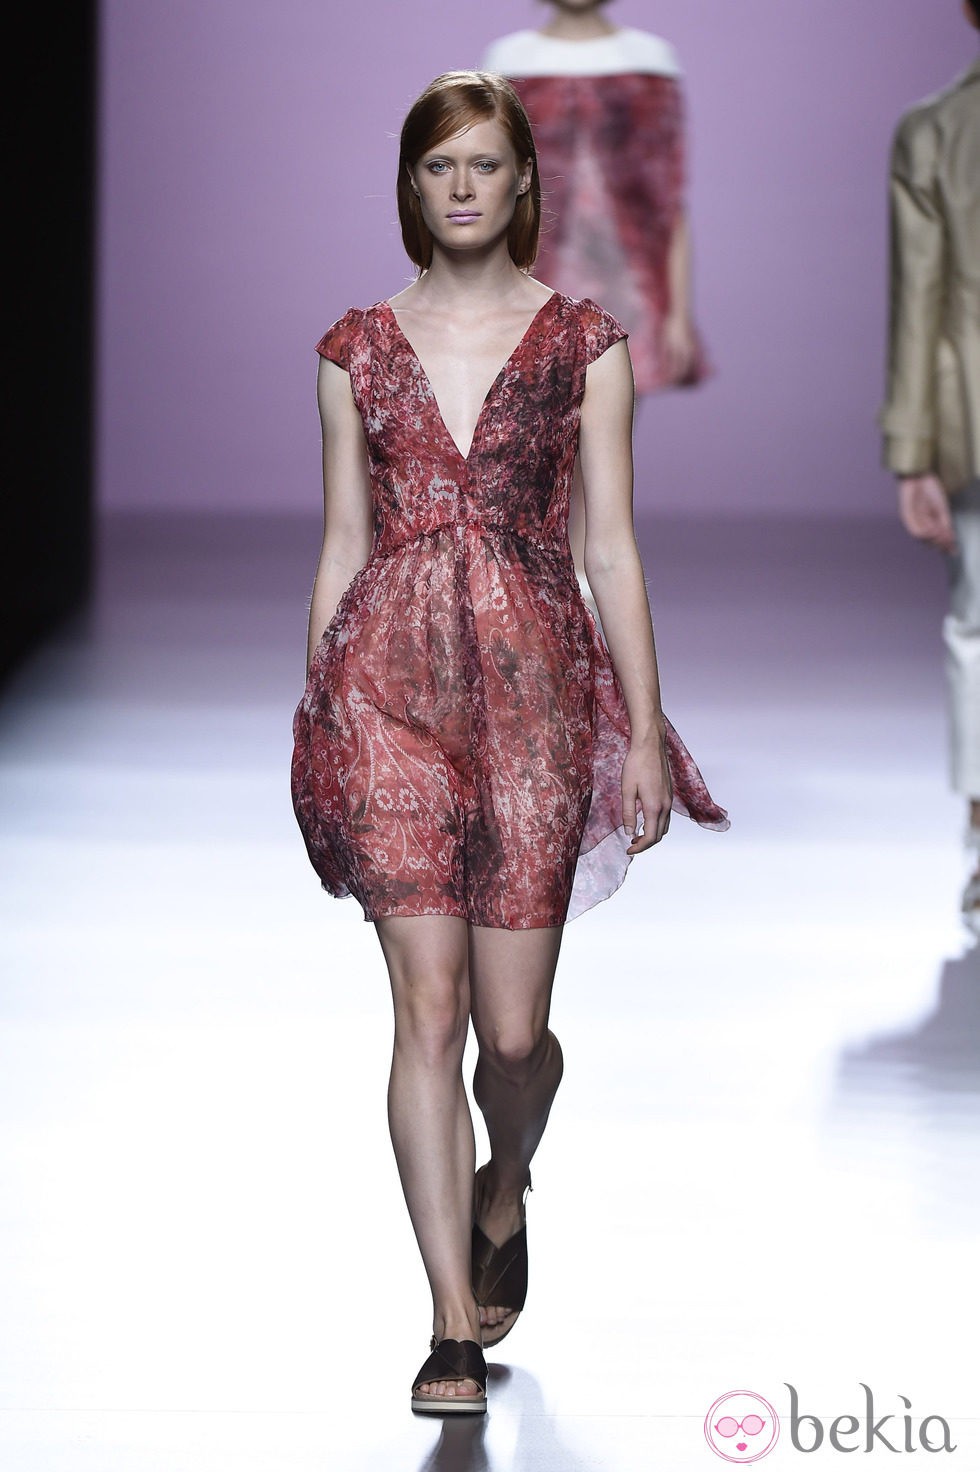 Vestido paisley de Devota & Lomba en Madrid Fashion Week primavera/verano 2015